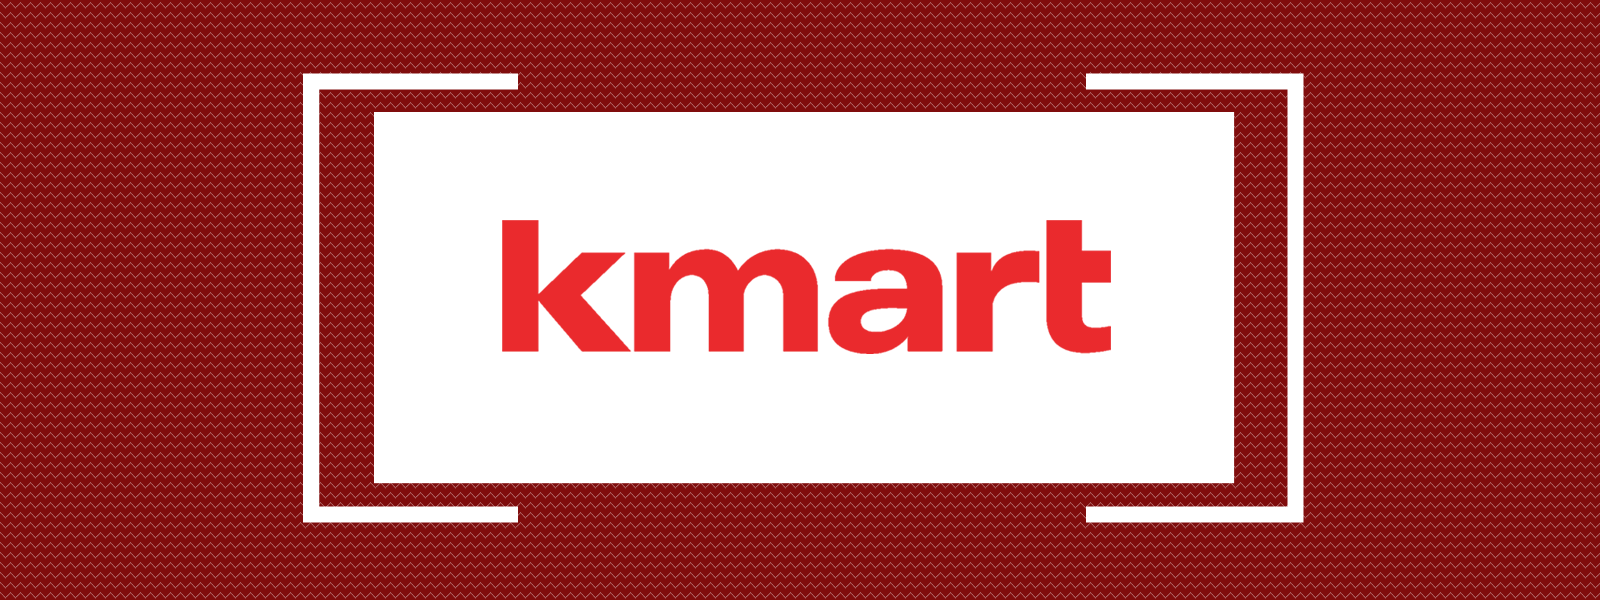 Kmart Method